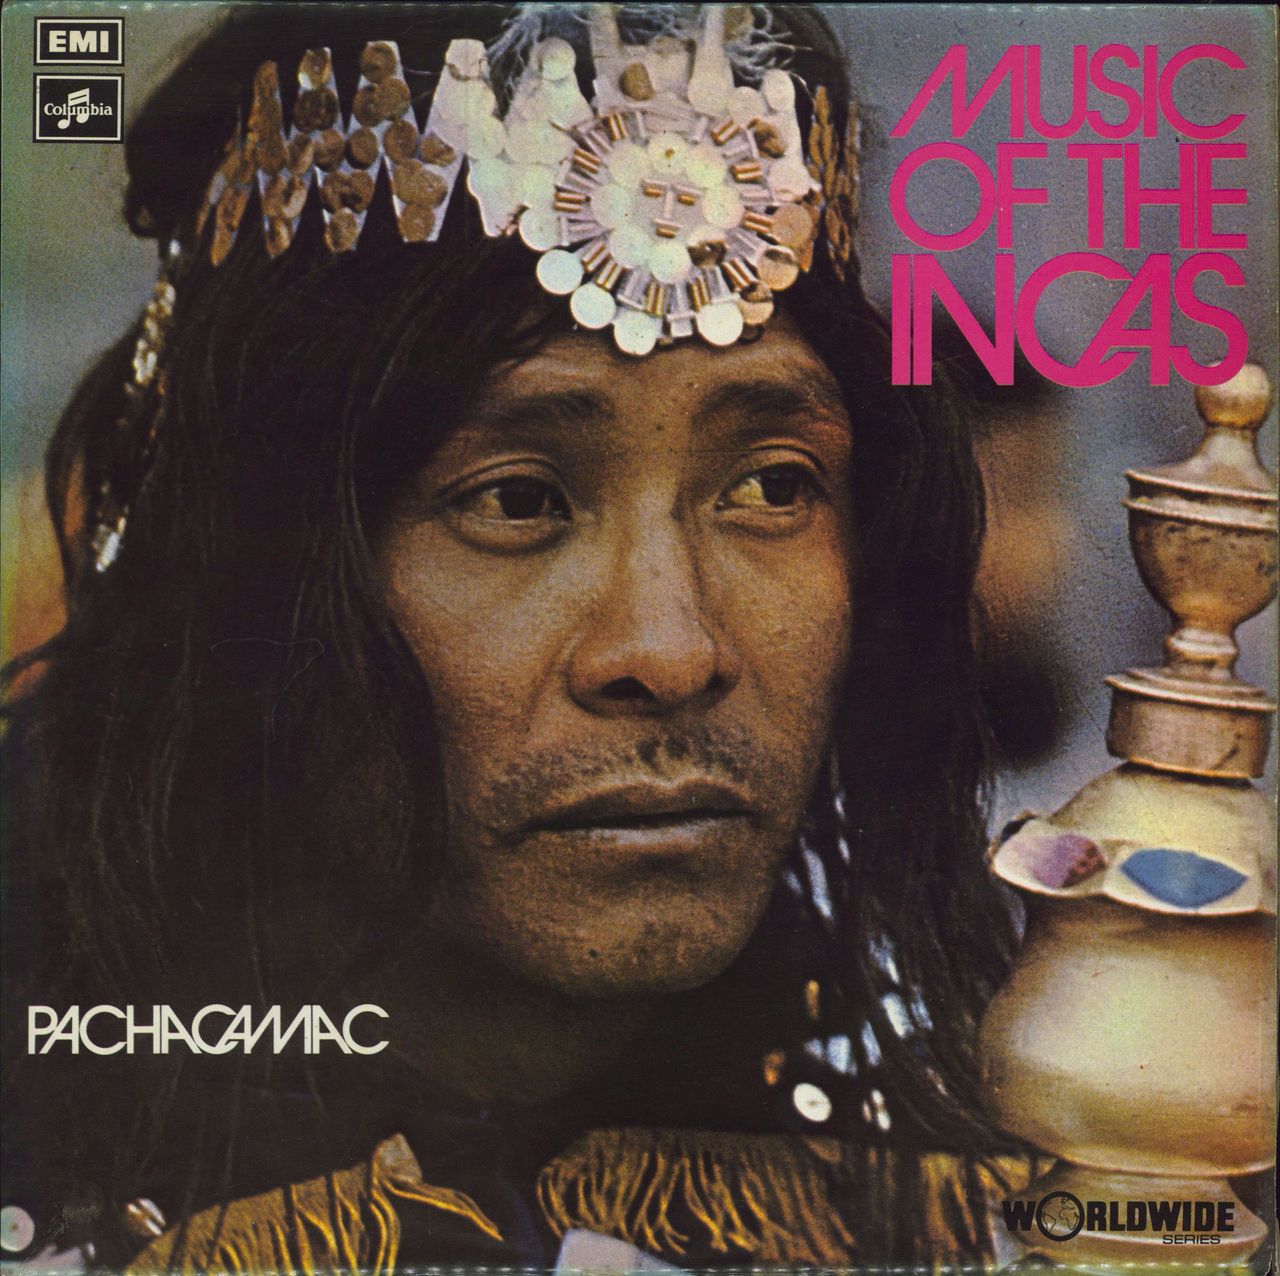 Pachacamac Music Of The Incas UK vinyl LP album (LP record) SCX6489